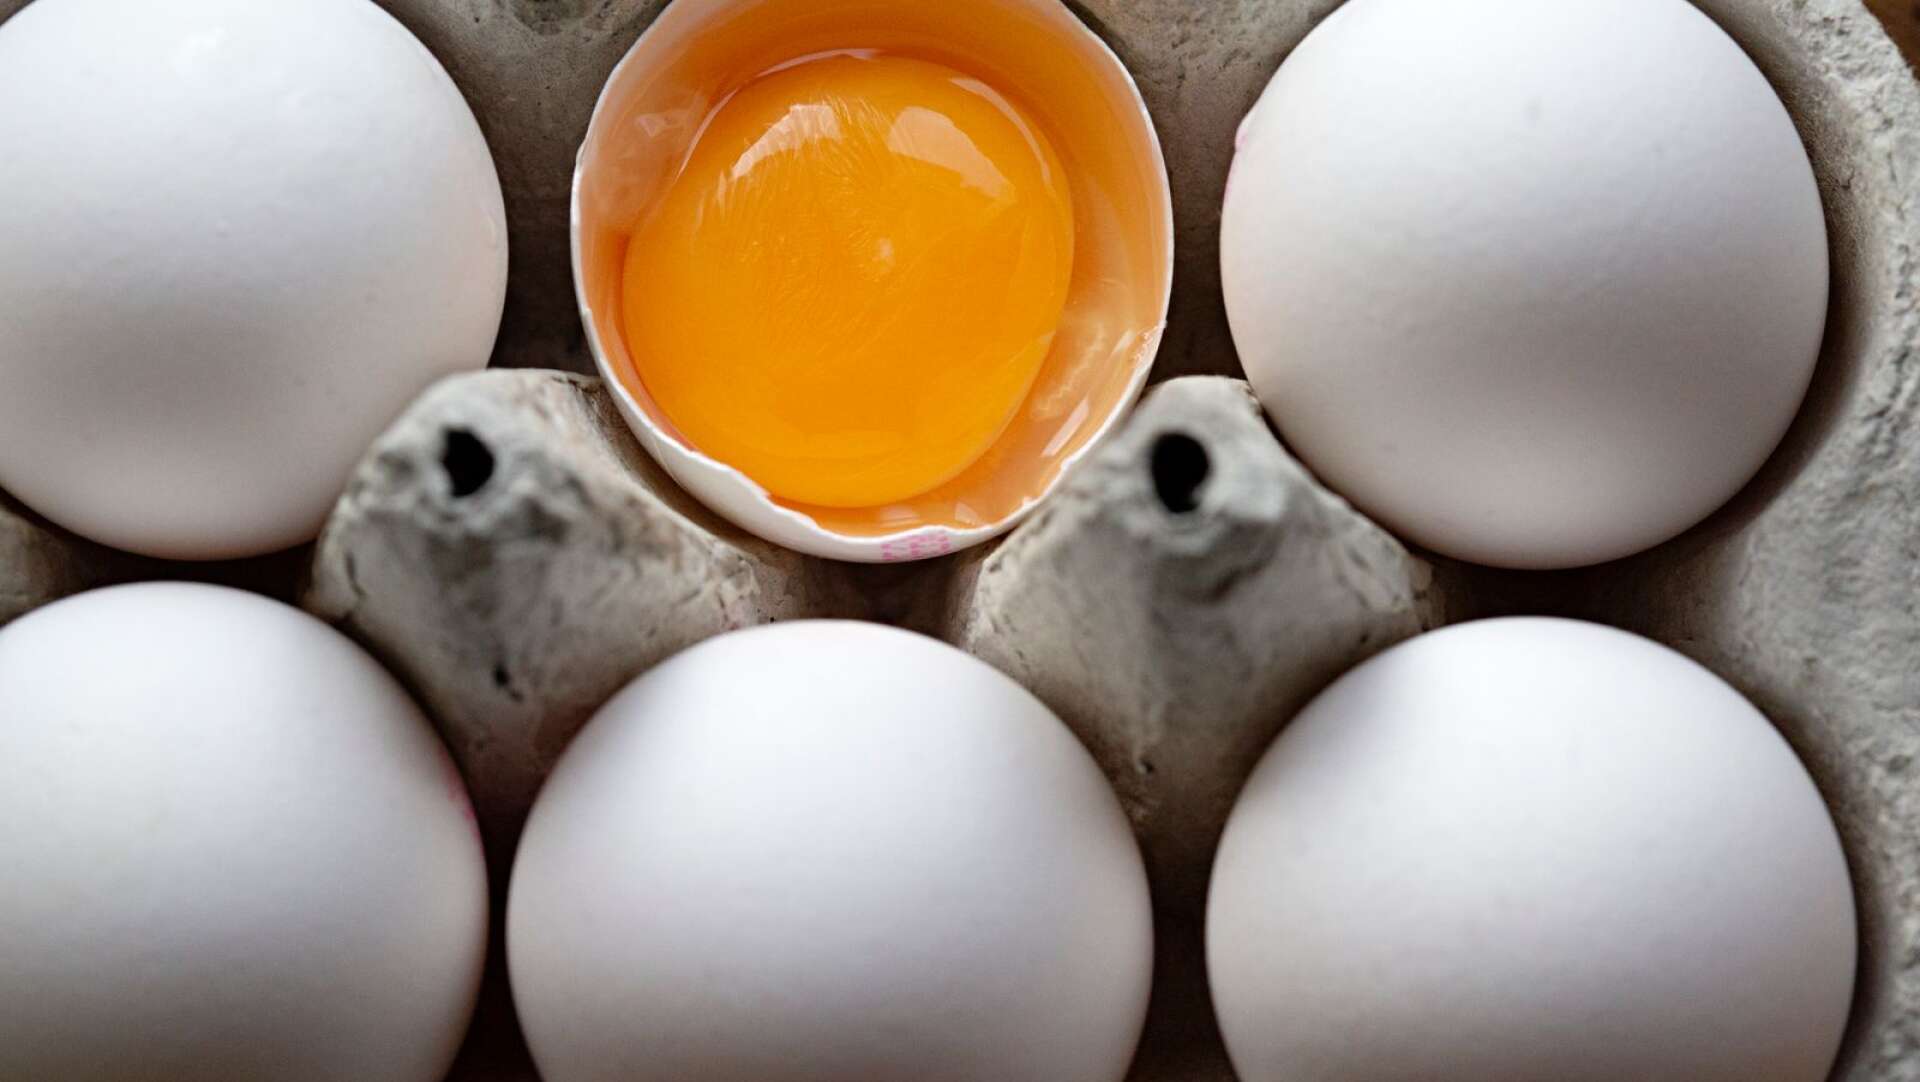 Återkallar ägg med hälsorisker: ”Gör salmonellaprov varje dag”